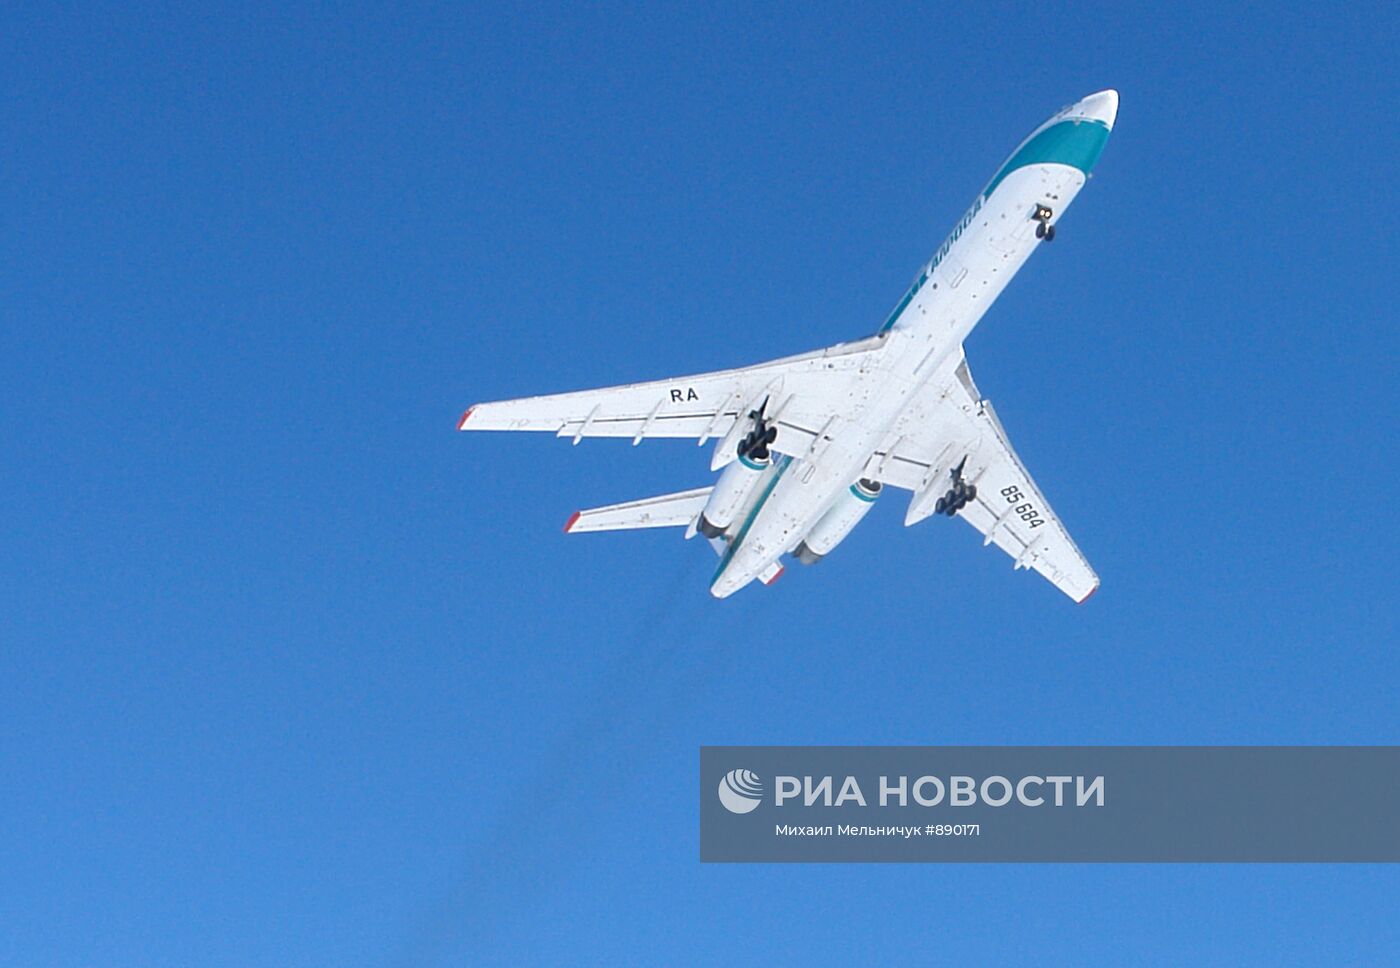 Аварийно севший в Коми самолет Ту-154 вылетел в Самару